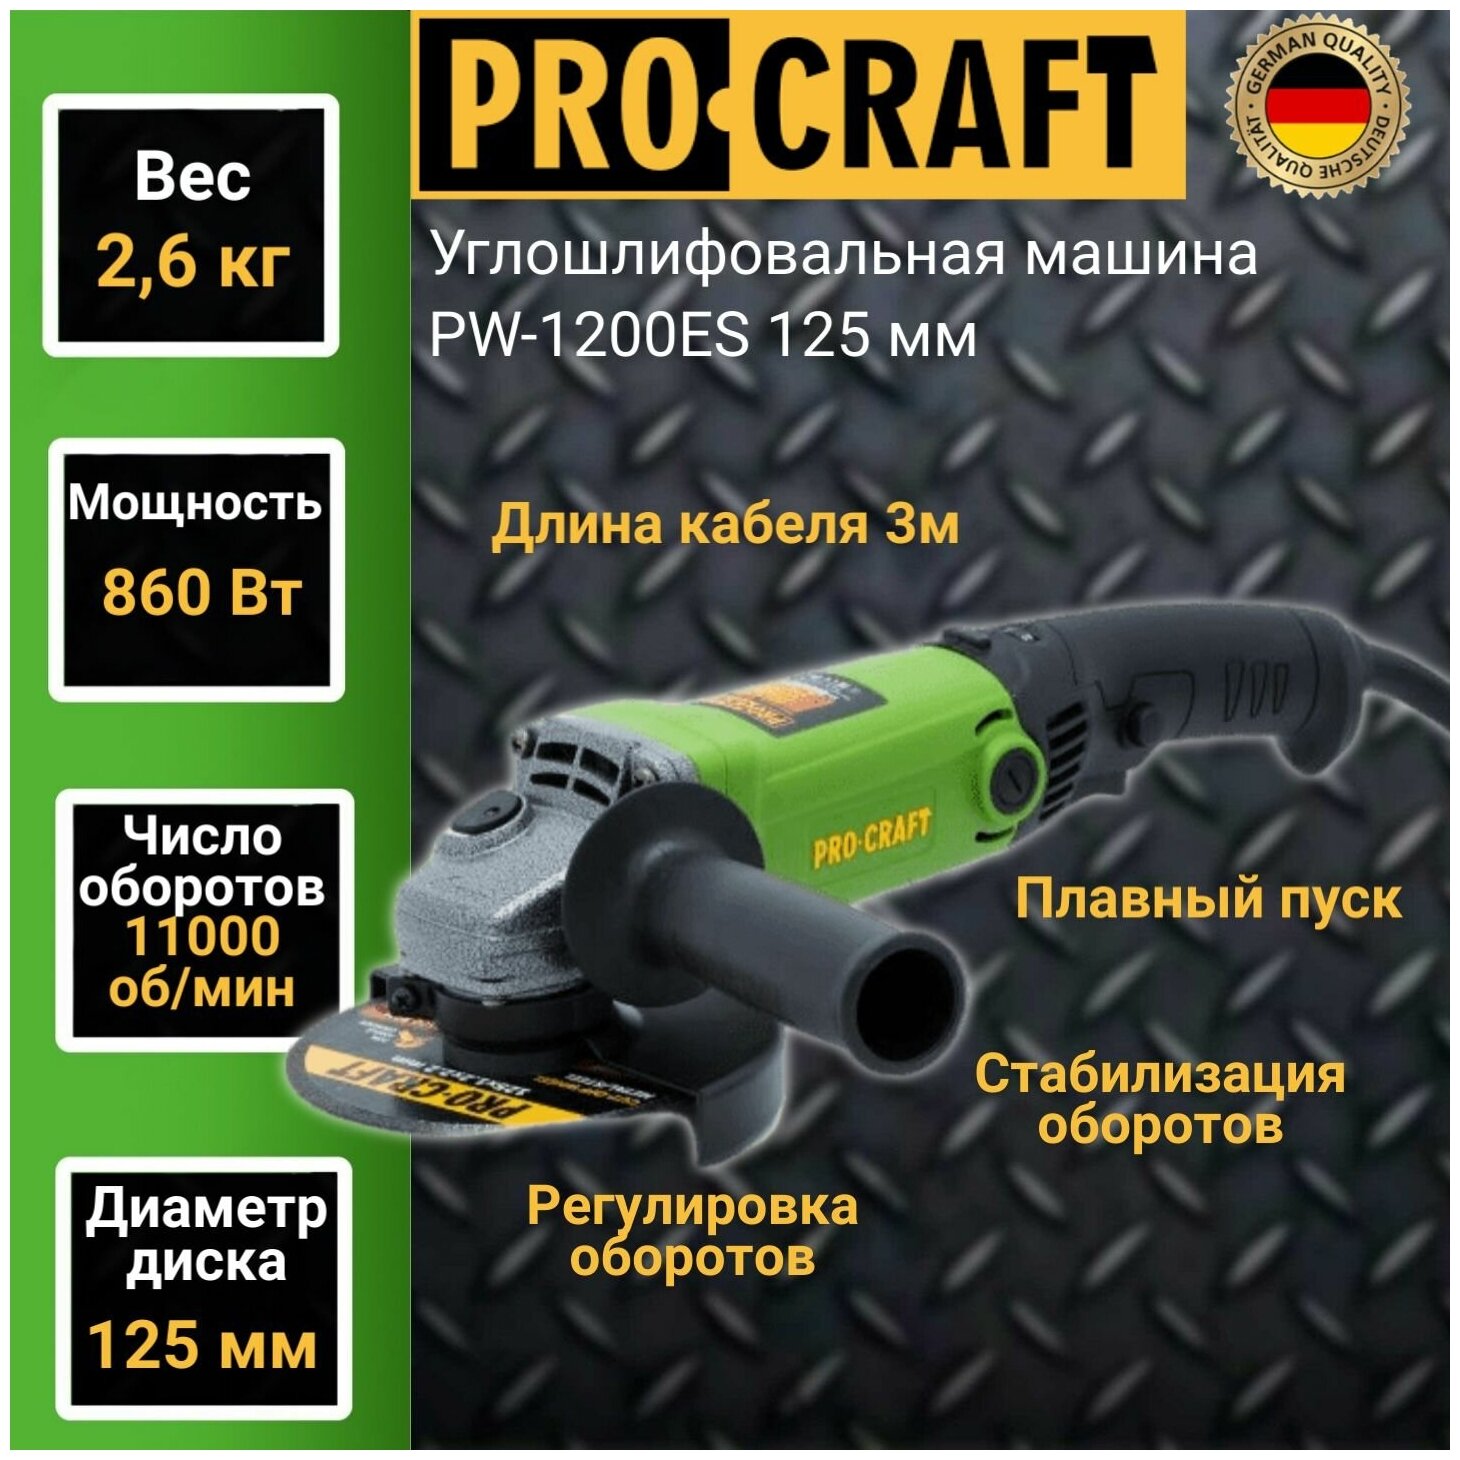 Углошлифовальная машина болгарка Procraft PW-1200 ES, 125мм круг, 860Вт, 11000об/мин, плавный пуск - фотография № 1